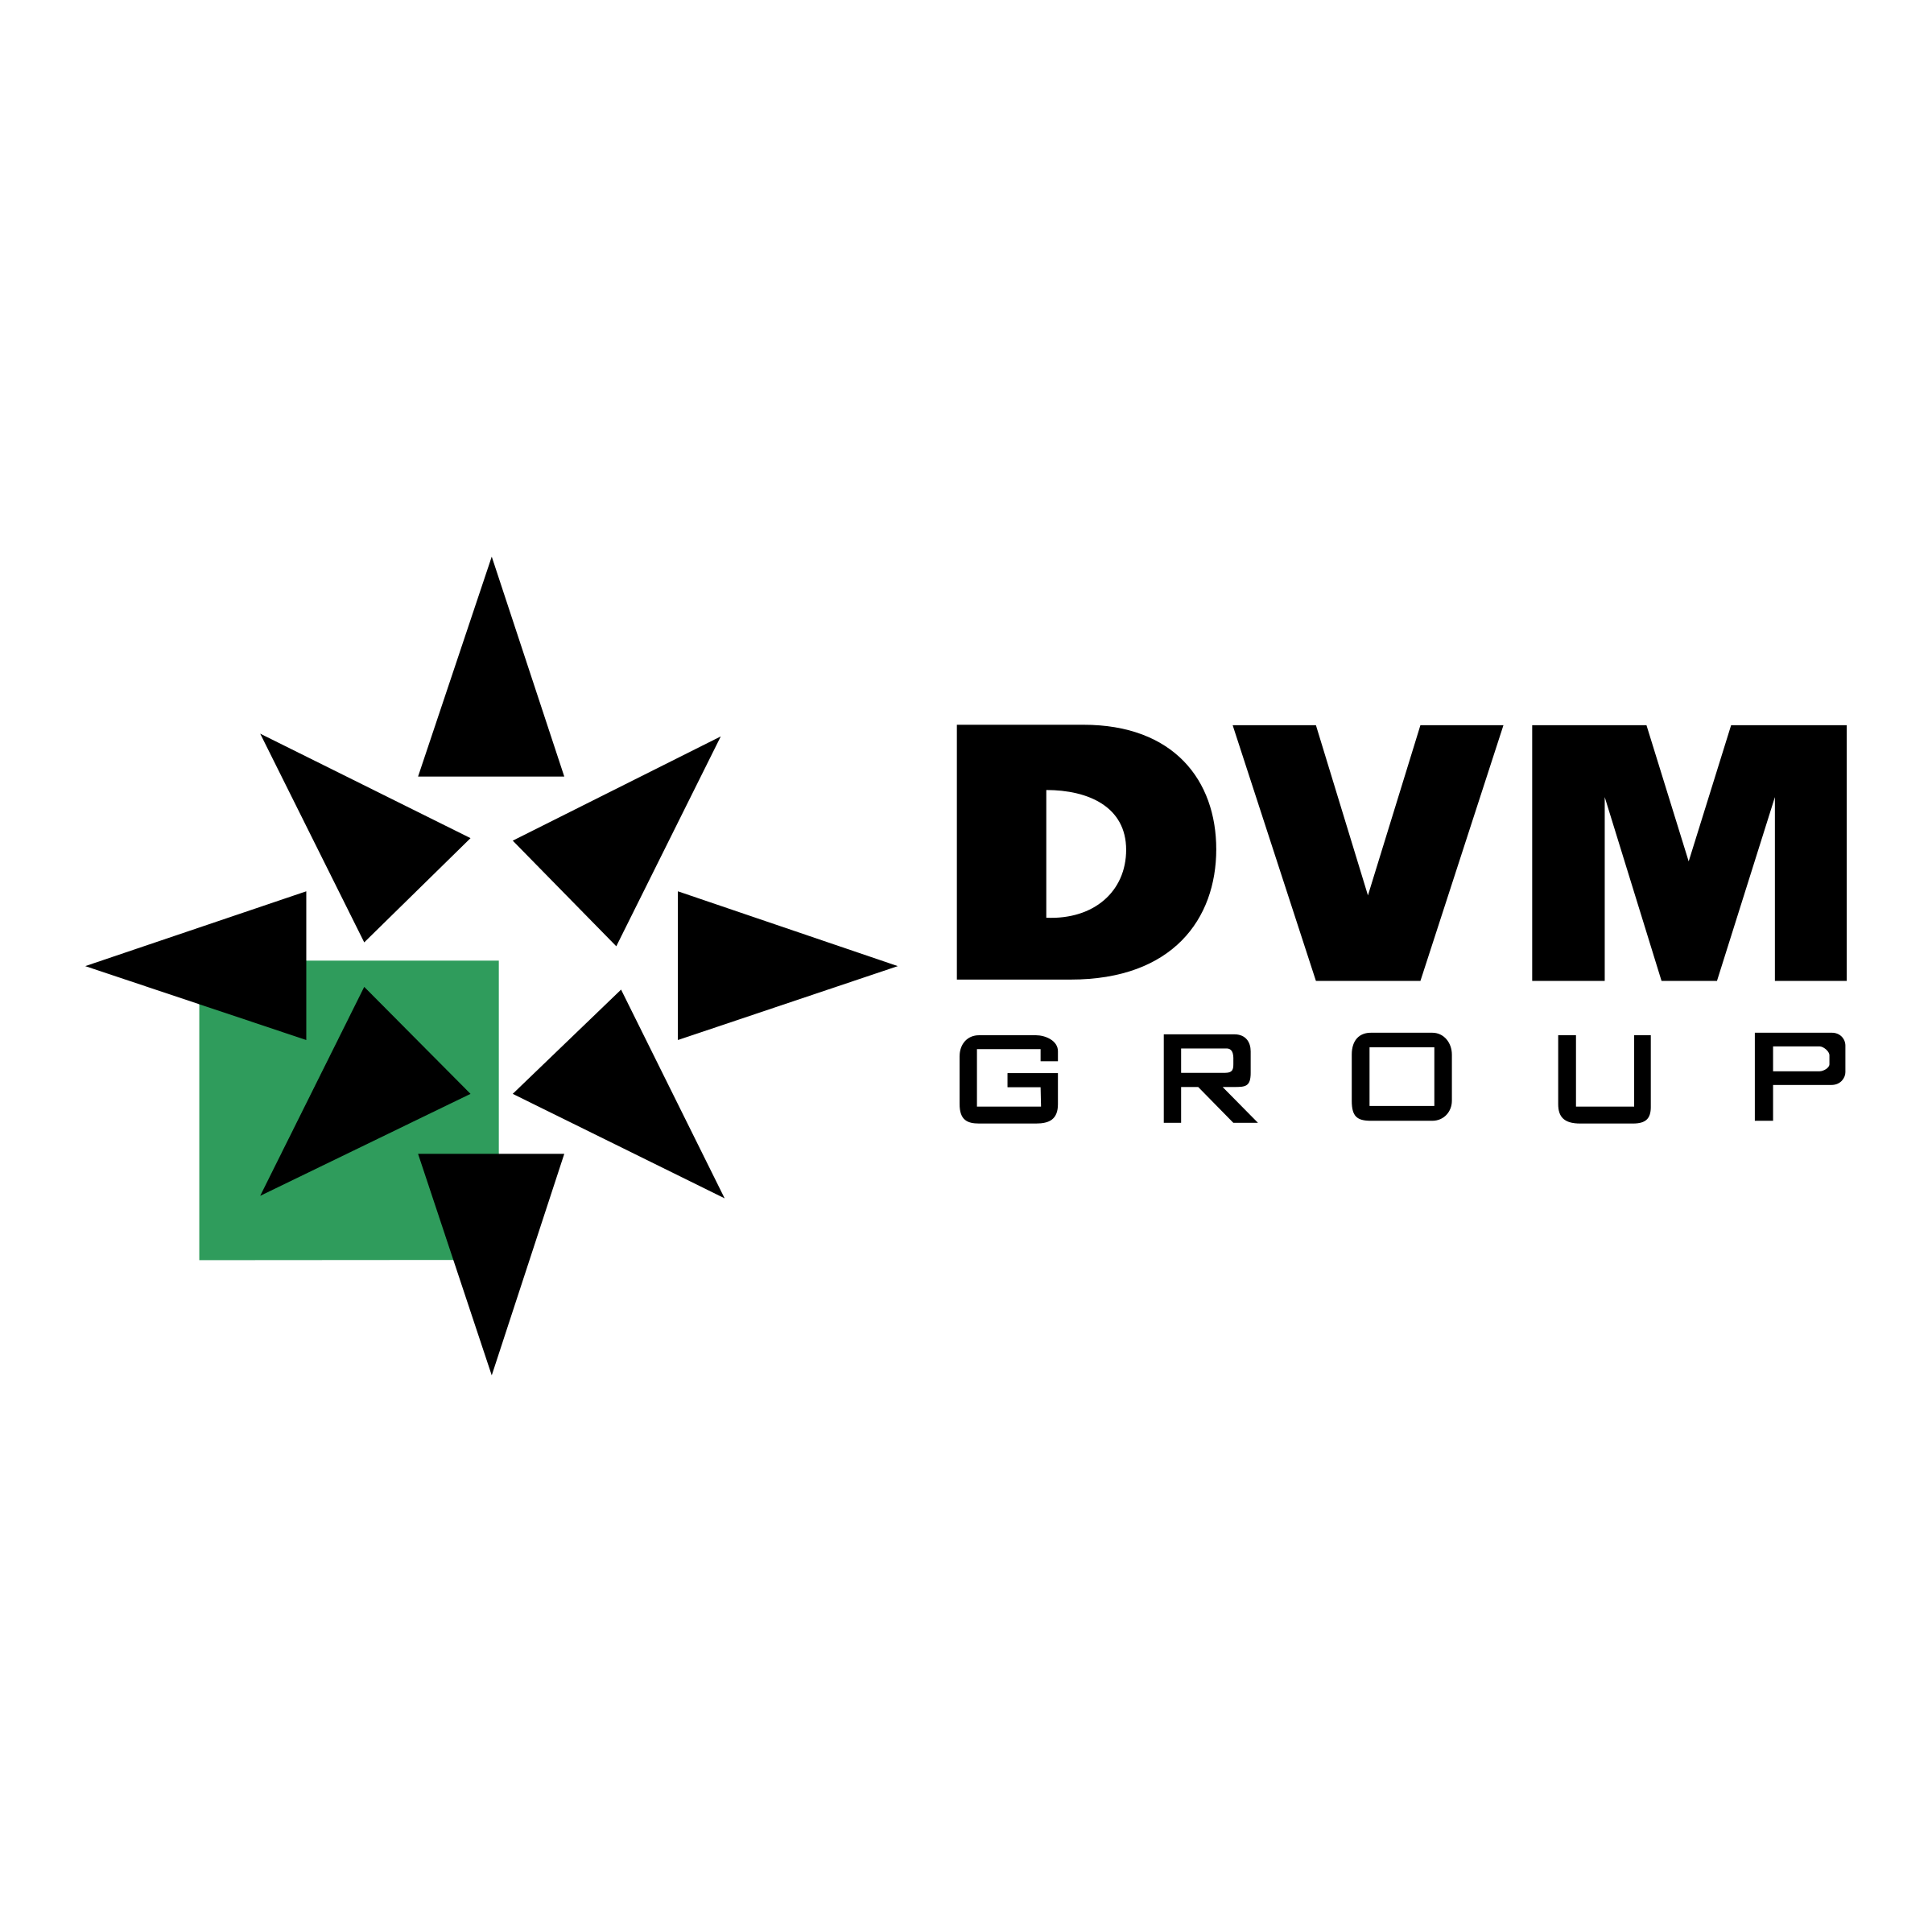 D.V.m. Logo - DVM Group Logo PNG Transparent & SVG Vector - Freebie Supply